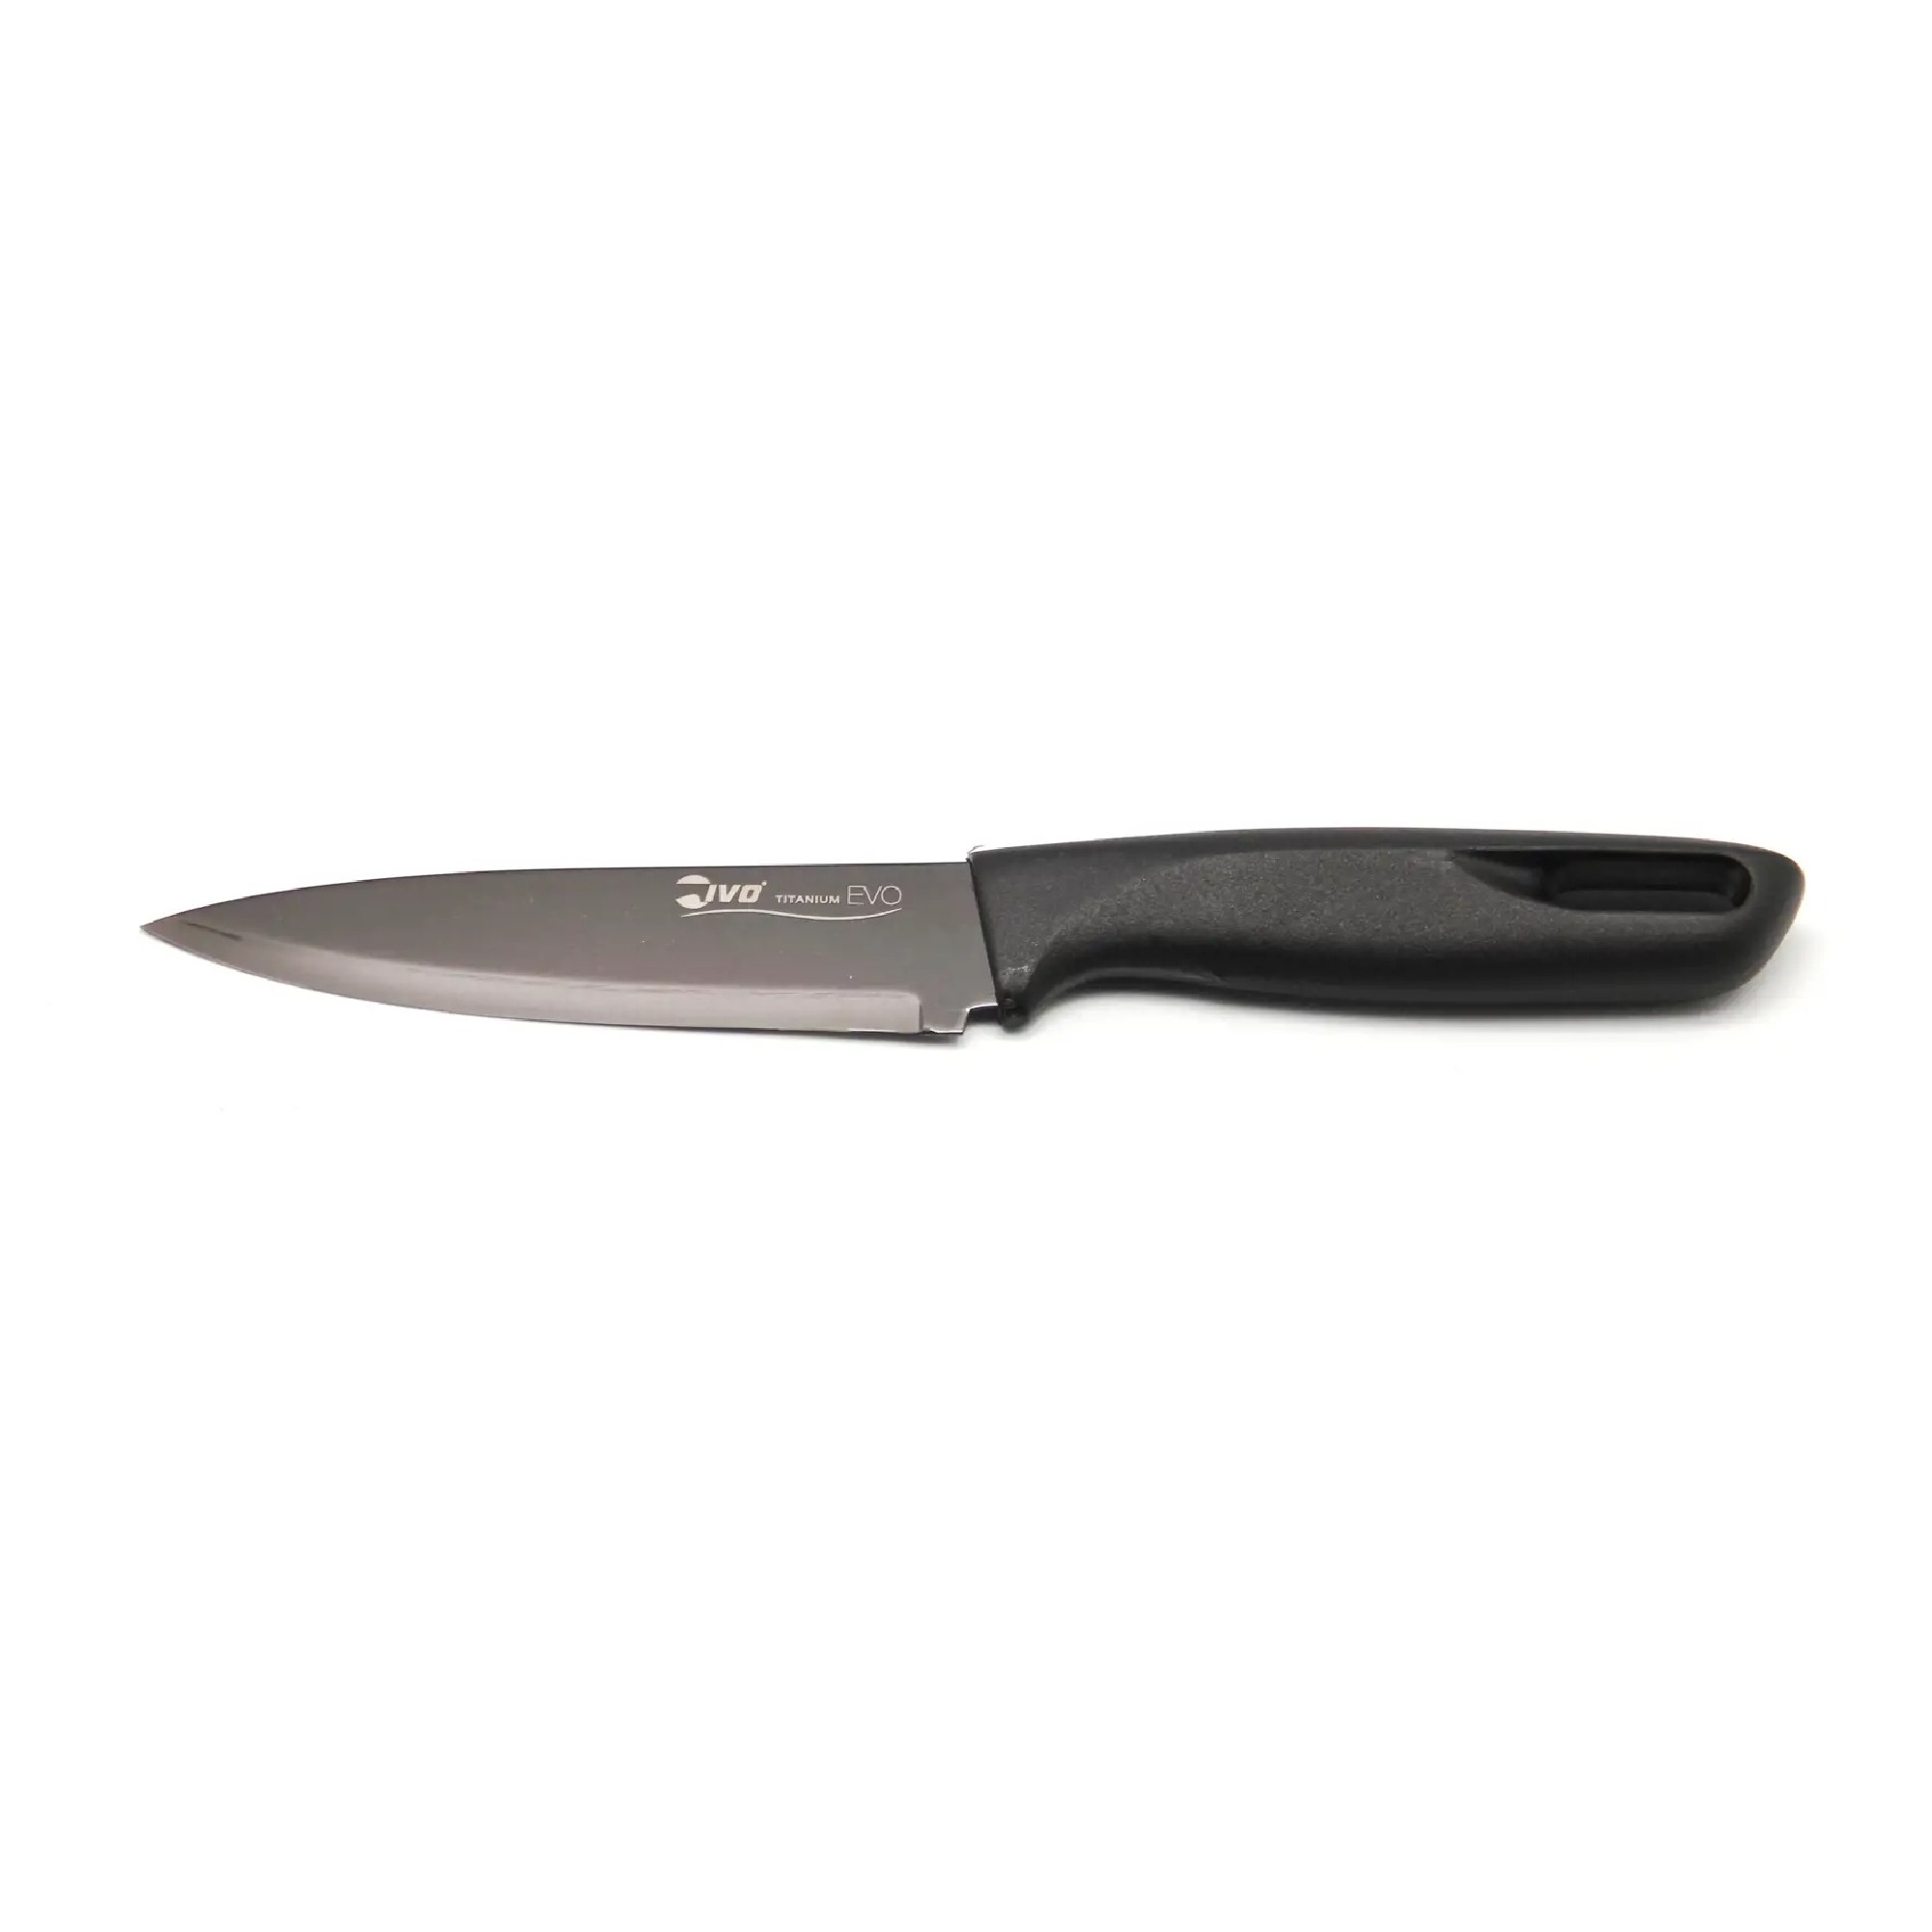 Нож универсальный Ivo кухонный 13см titanium evo (22103913), цвет черный - фото 1